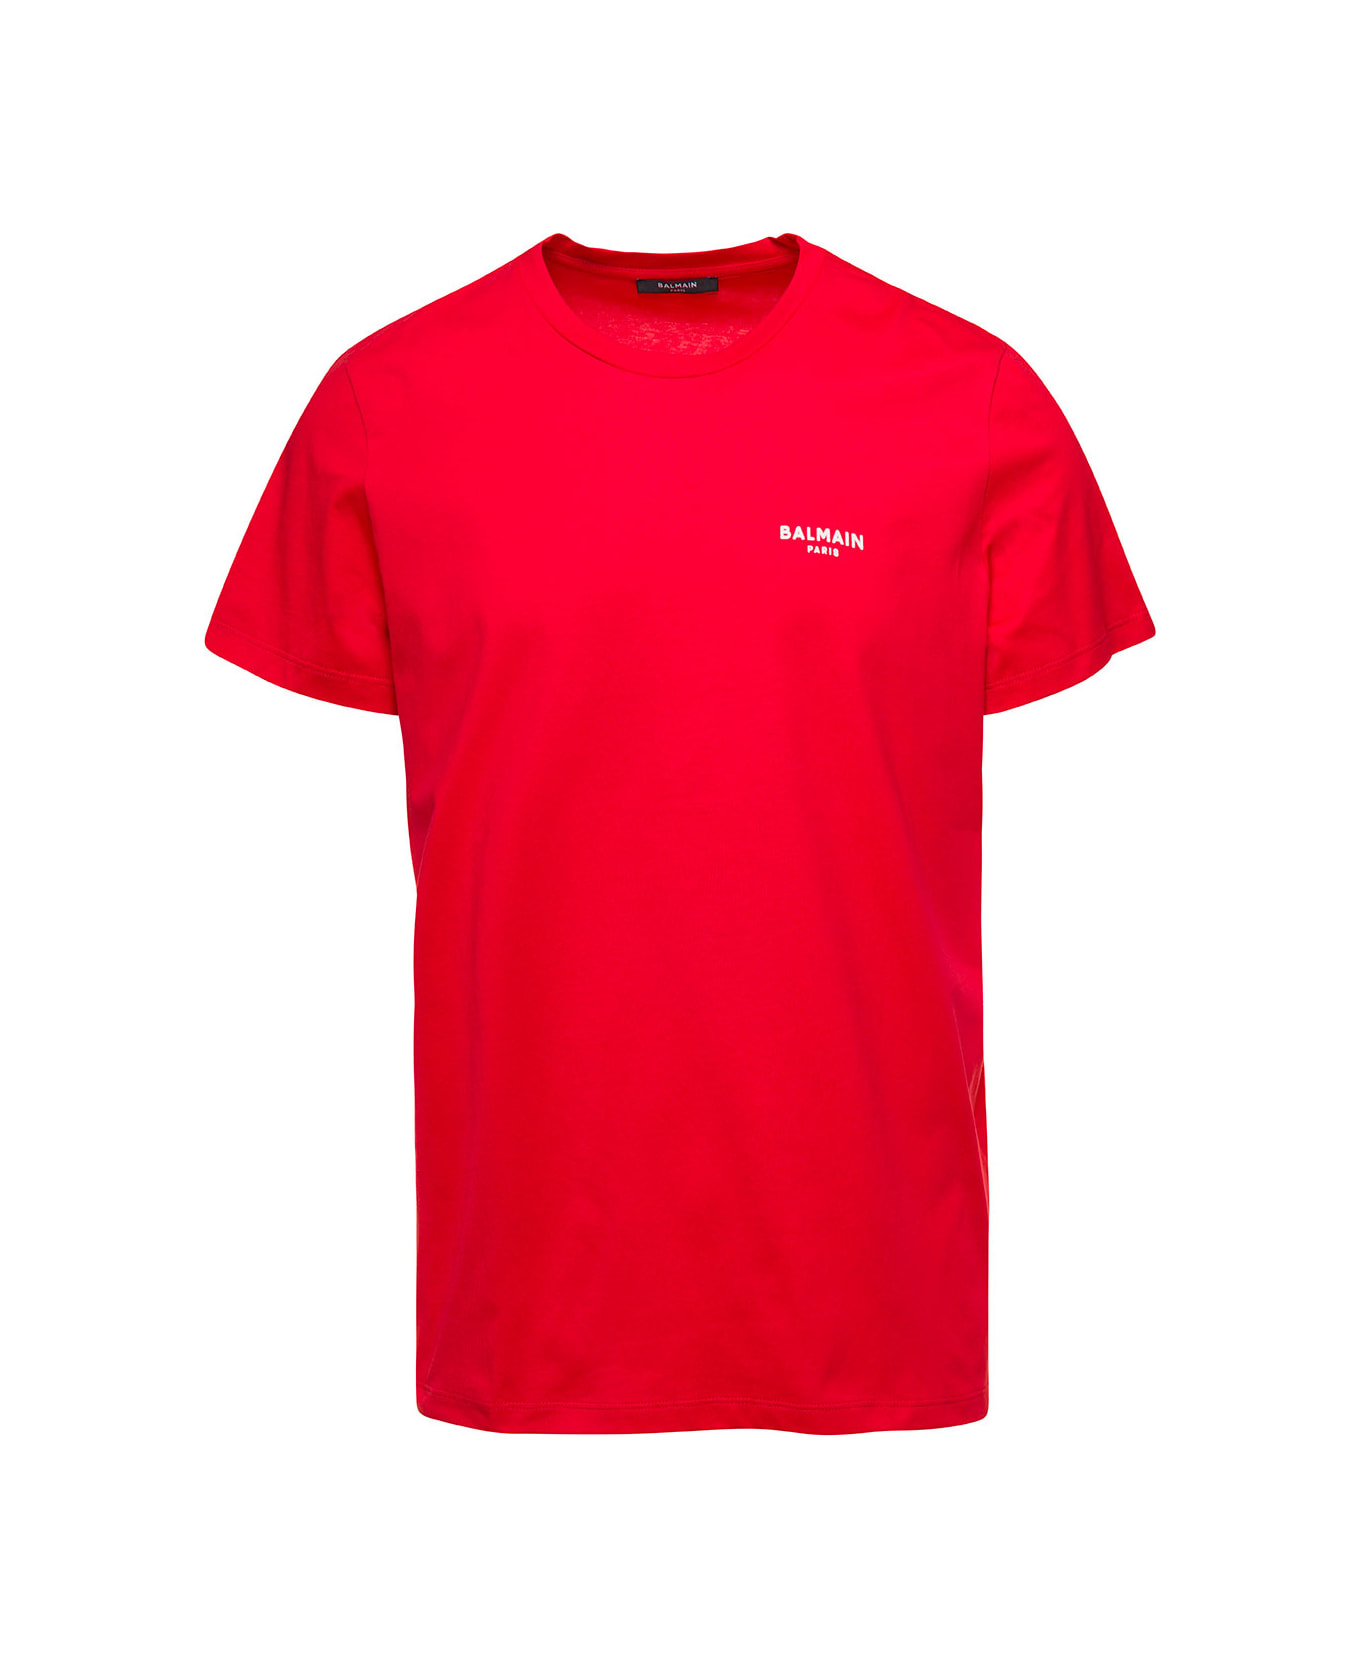 Balmain Flock T-shirt - Red